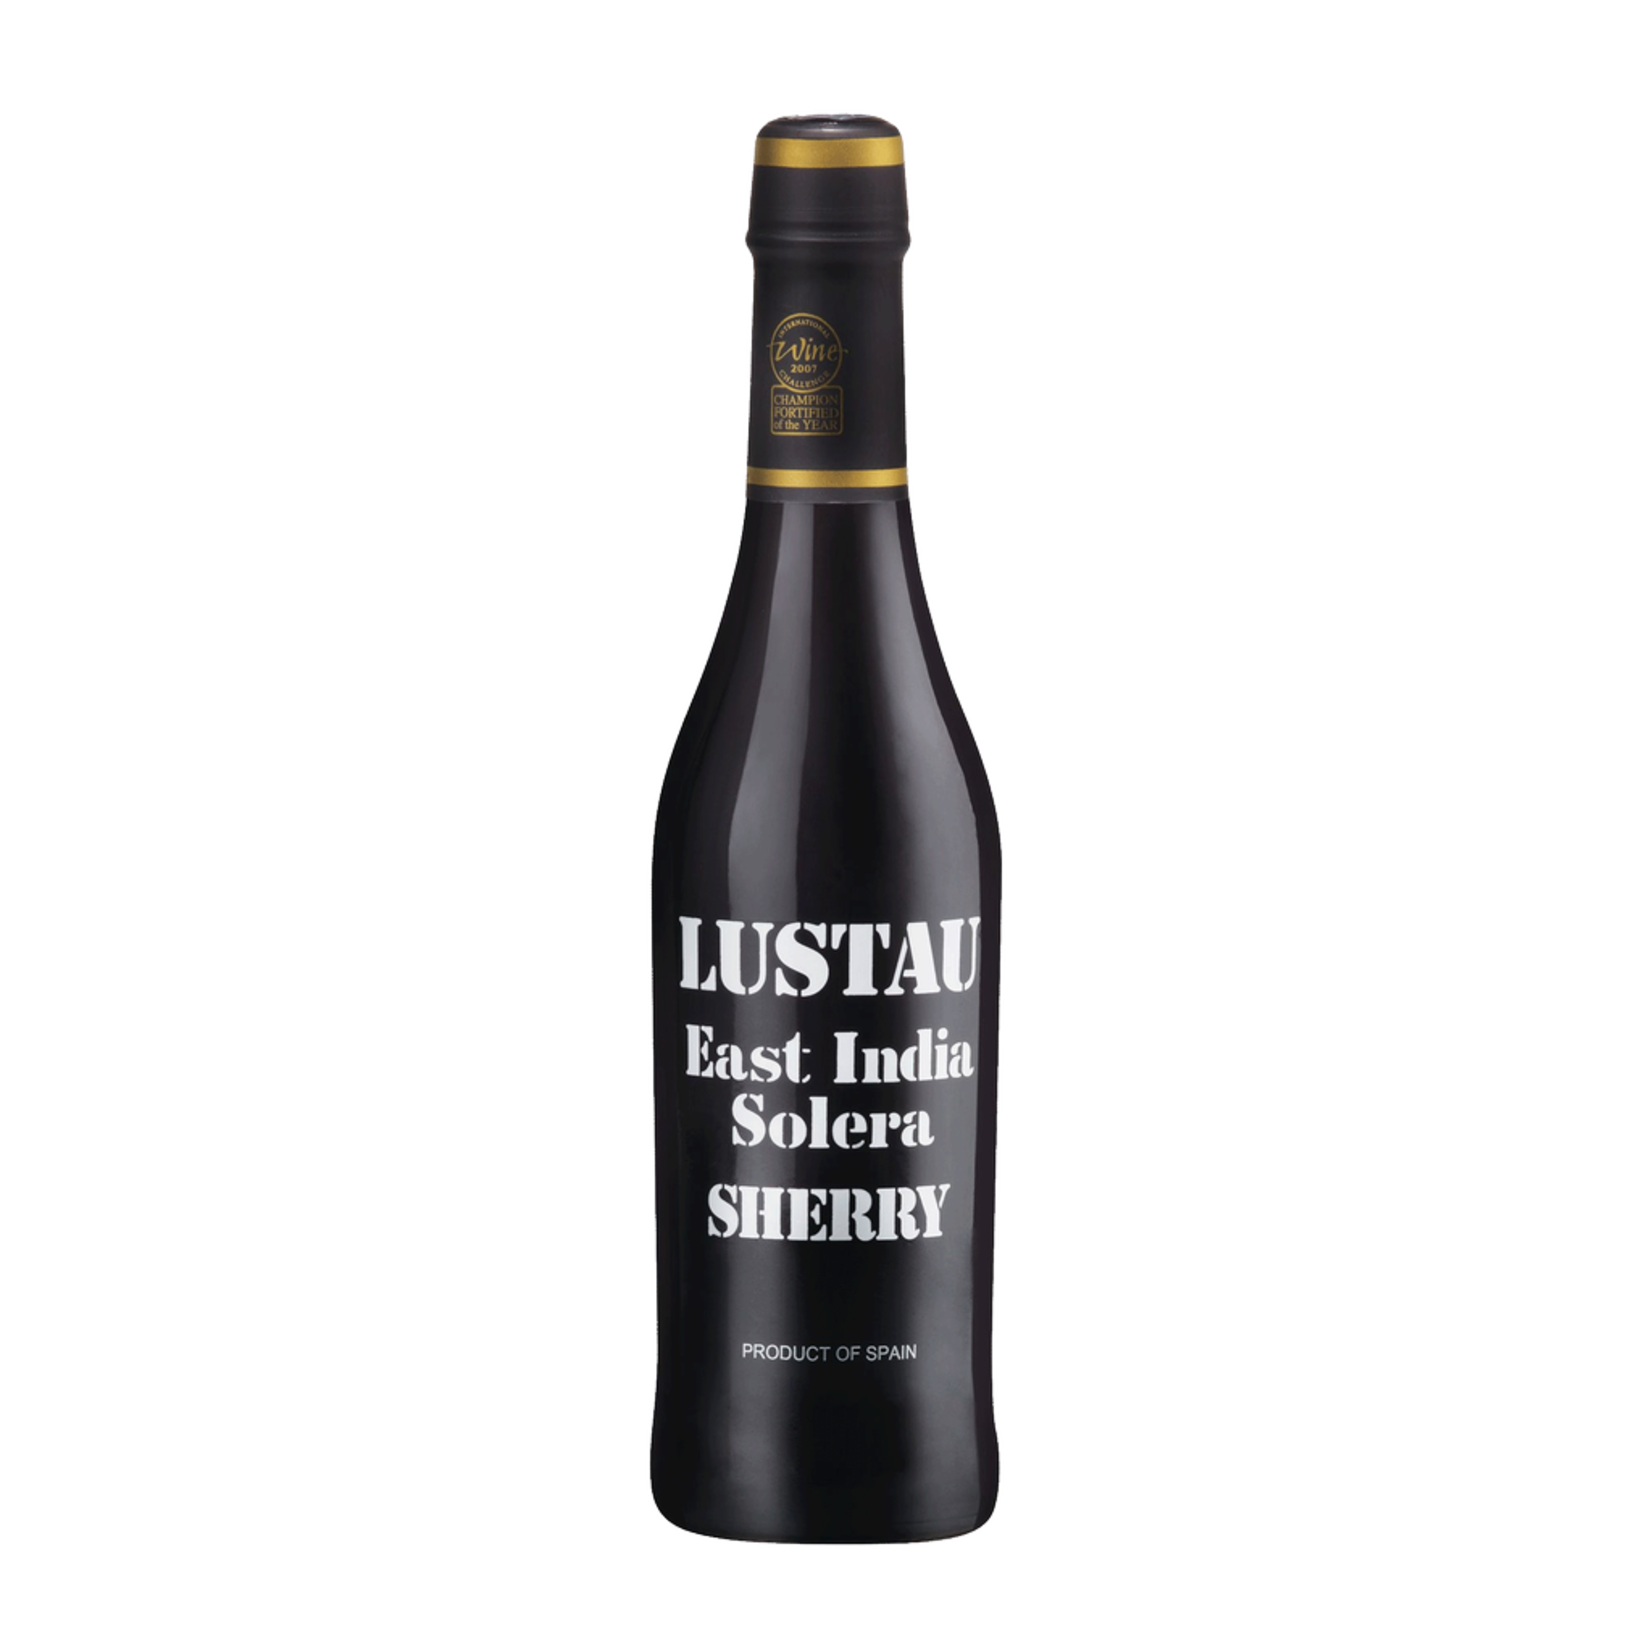 Wine Emilio Lustau East India Sherry Solera Reserva